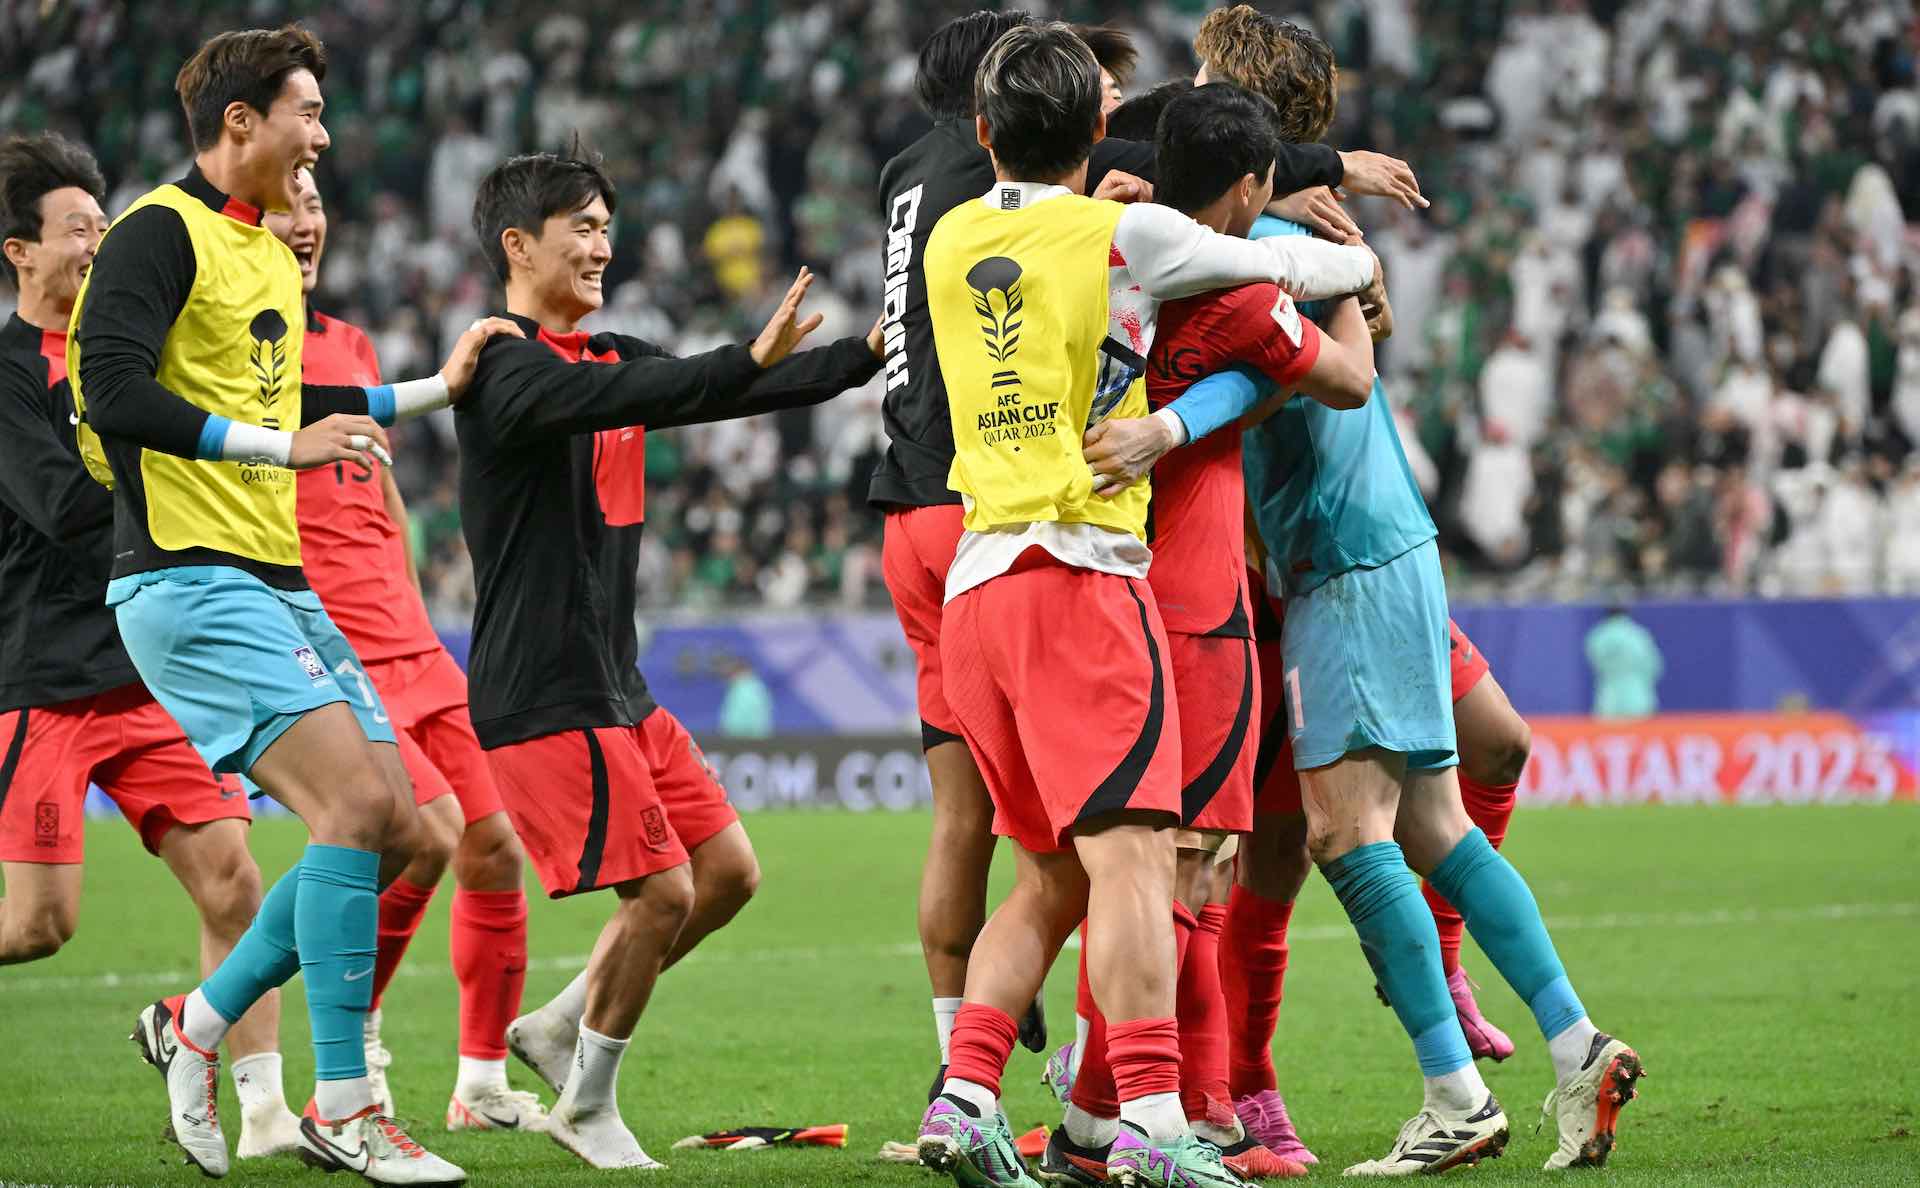 AFC आशियाई चषक 2023 शूटआउटमध्ये दक्षिण कोरियाने सौदी अरेबियाला हरवले